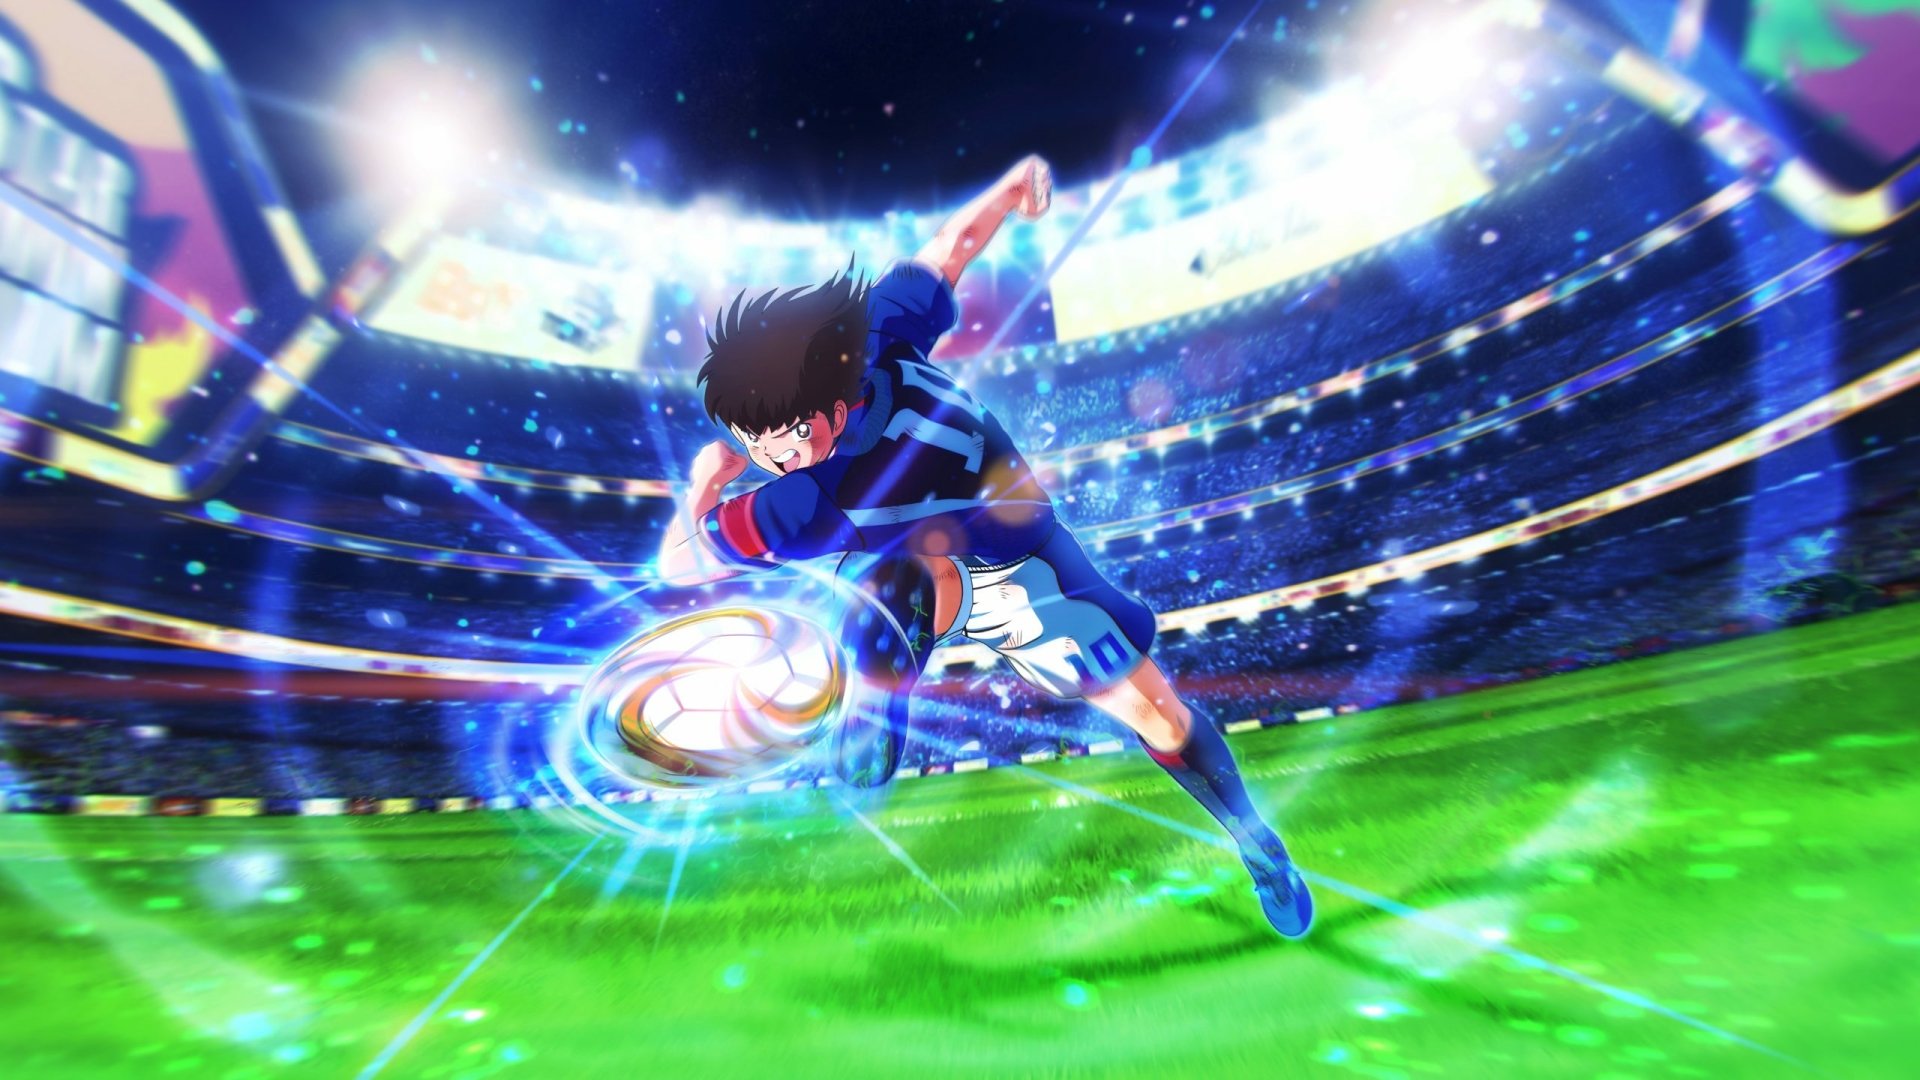 Hình nền  Thuyền trưởng Tsubasa Anime con trai bóng đá Nền đỏ Nền đơn  giản 1444x810  Fubuki1806  1478199  Hình nền đẹp hd  WallHere